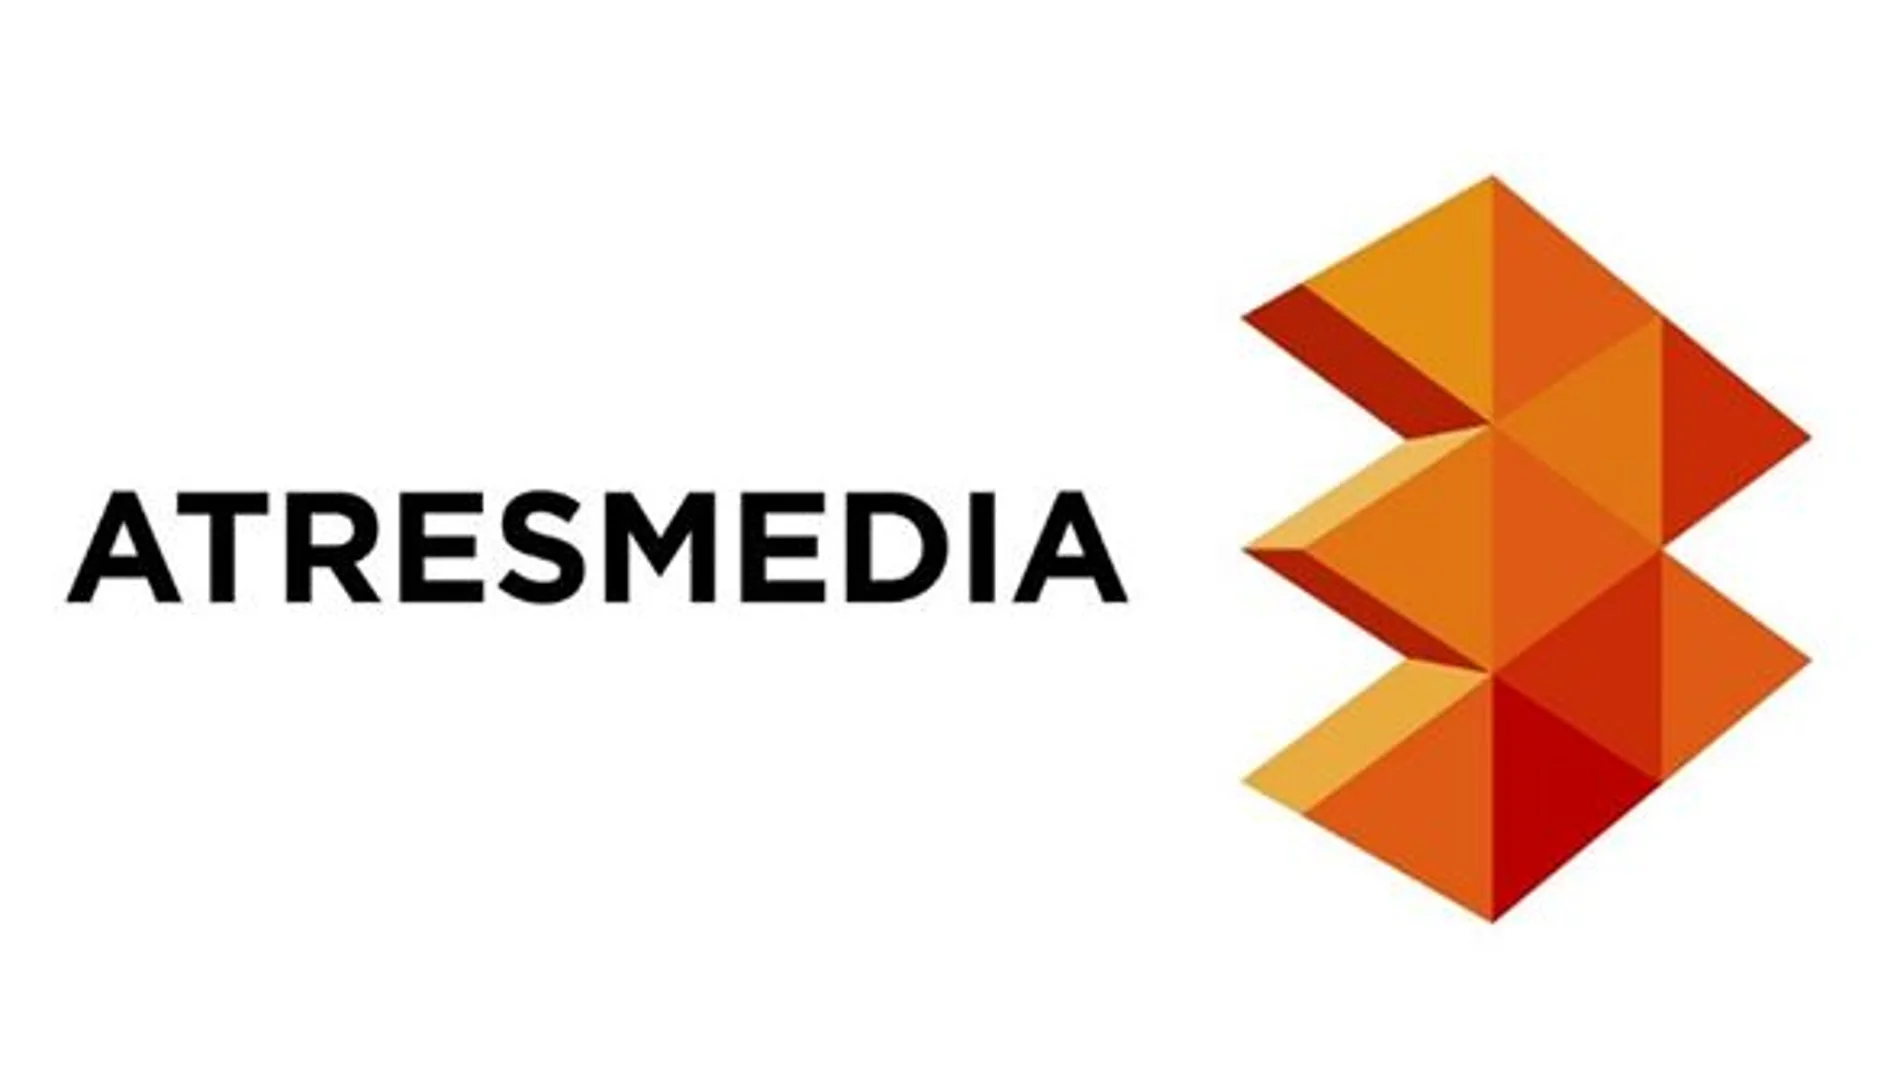 Las webs de Atresmedia, líderes en internet